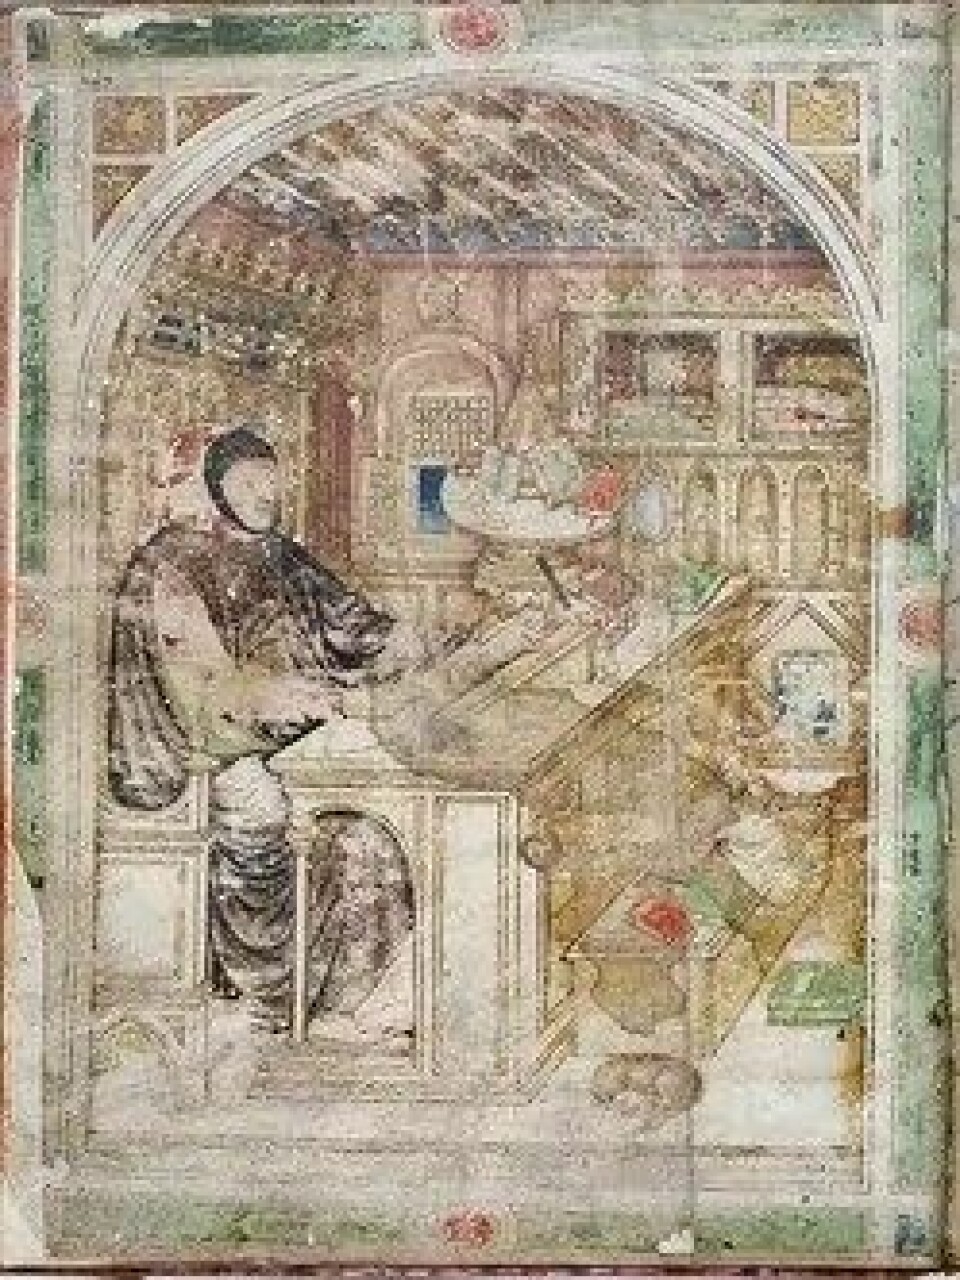 Tittelbildet for manuskriptet til Petracas Om berømte menn, som viser forfatteren i sitt arbeidskammer. (Kilde: Wikimedia commons)